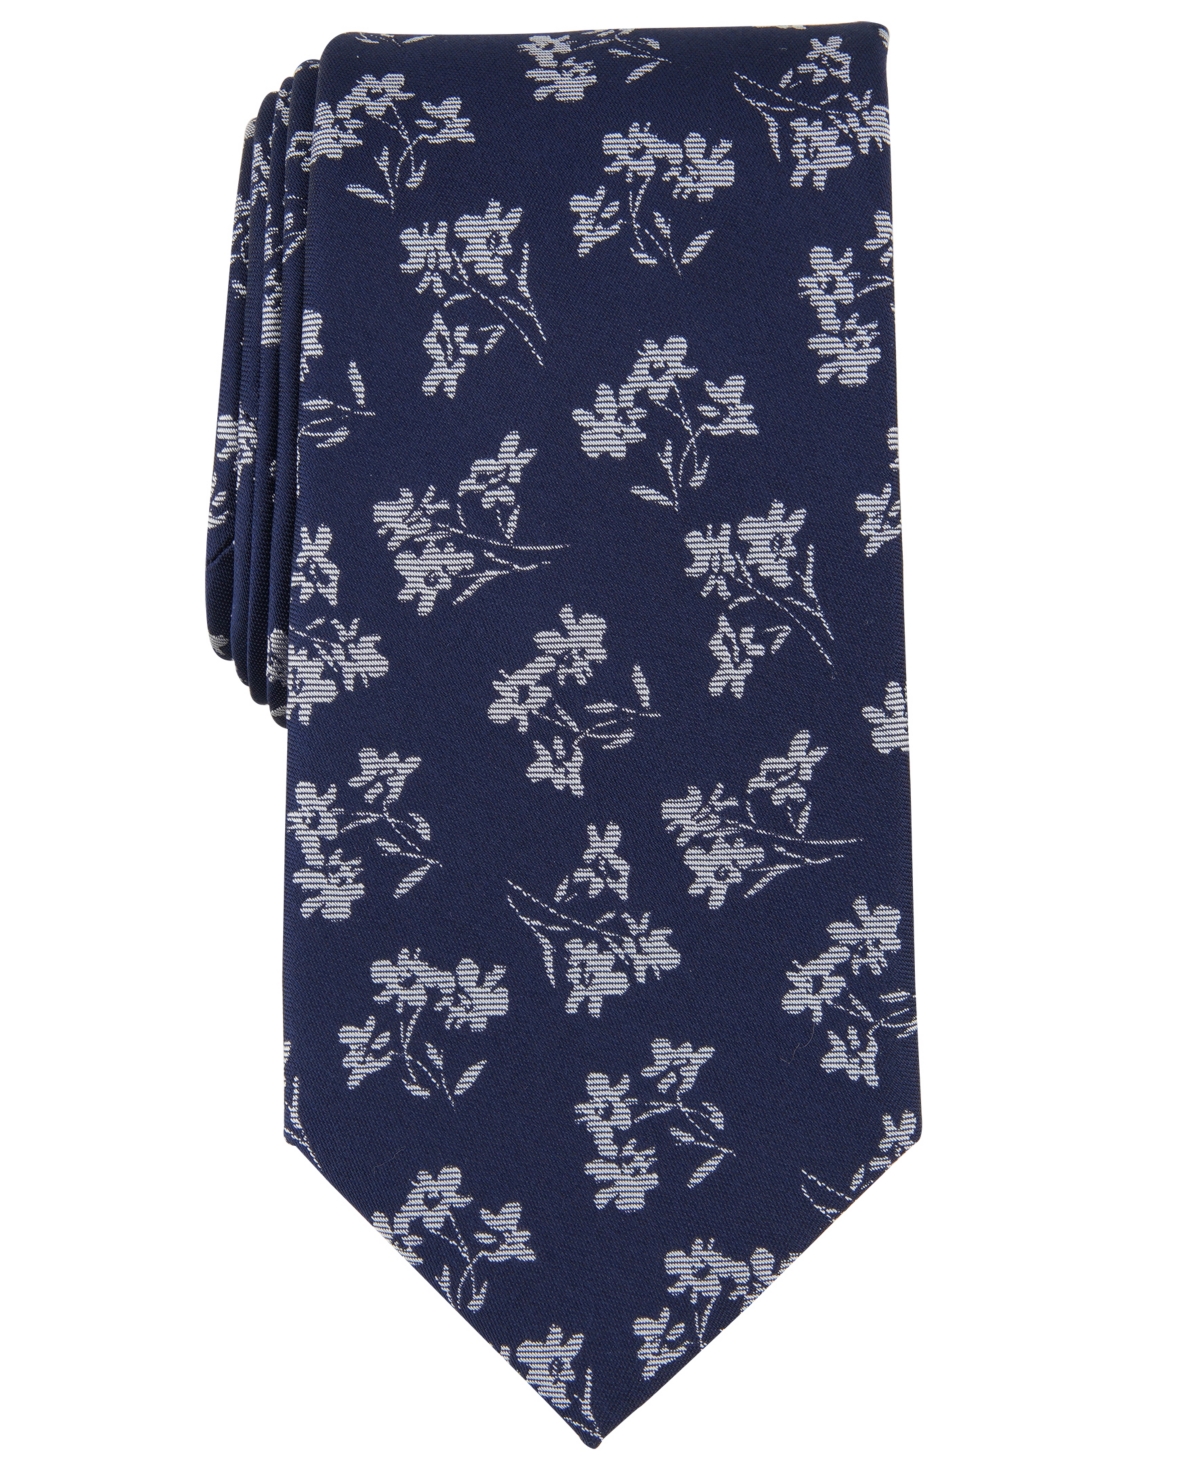 Michael Kors Men's Classic Floral Tie In Navy